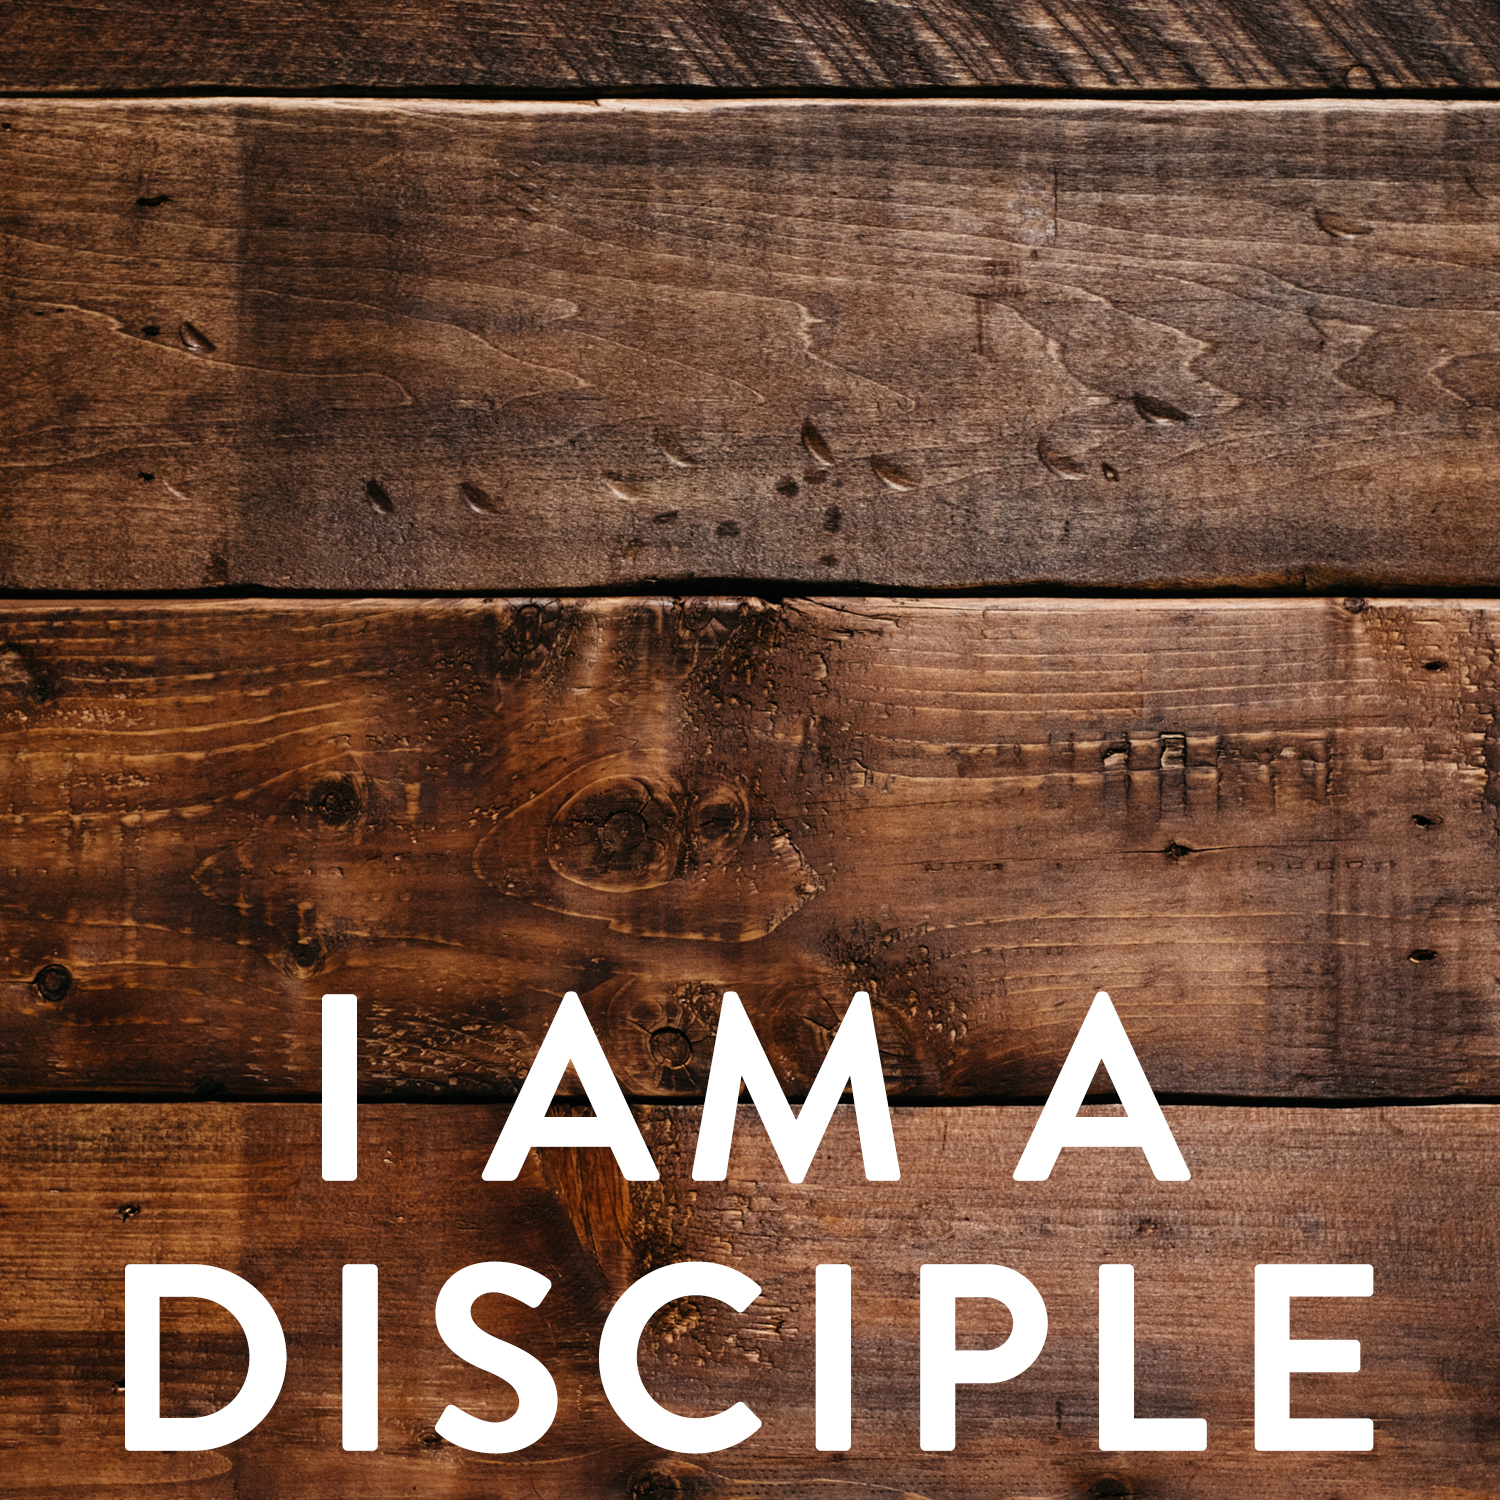 I am a disciple